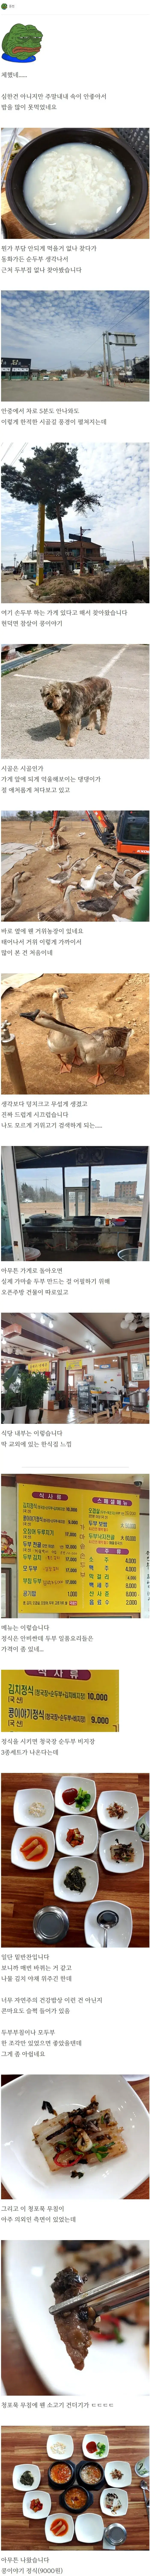 9천원에 뚝배기 3개 두부집.jpg | mbong.kr 엠봉